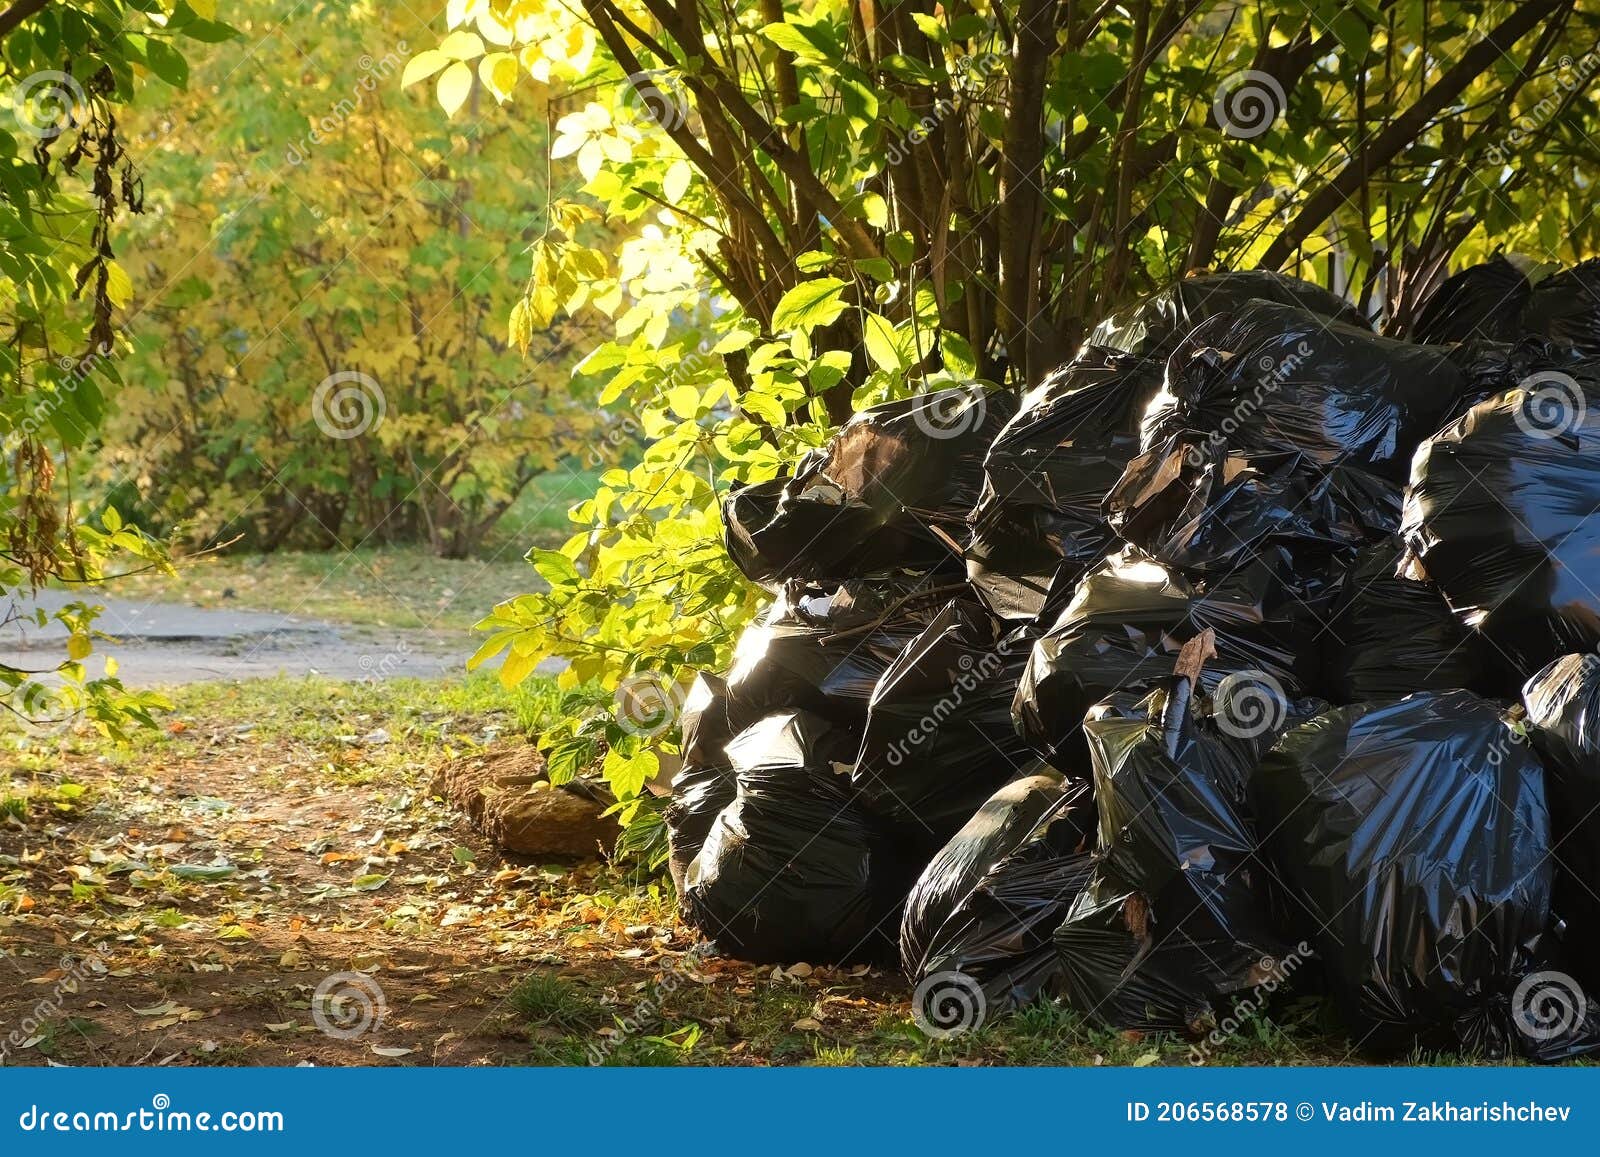 Garbage-Bag-Trees: Garbage-Bag-Tree!